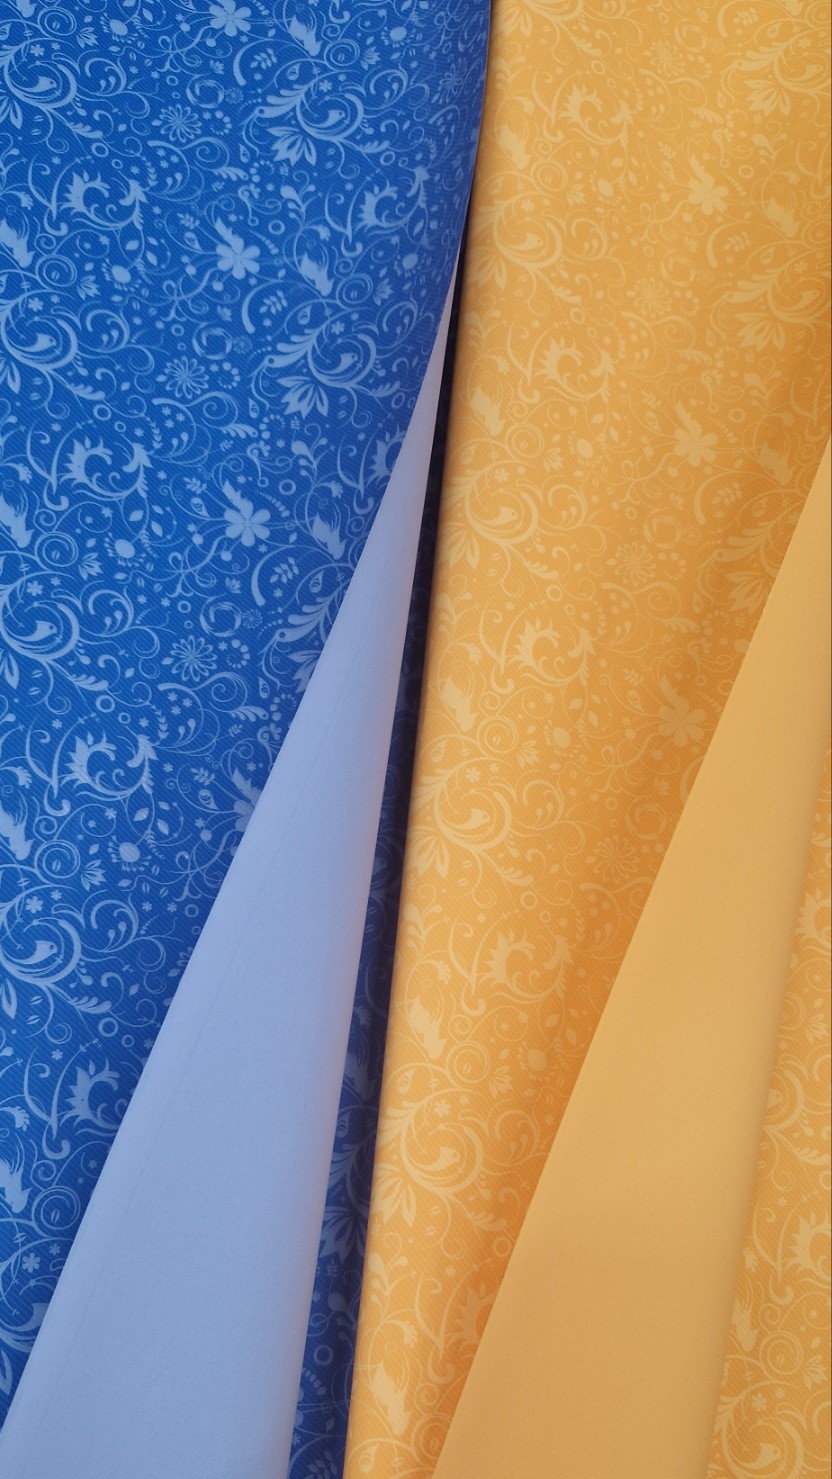 plavi i žuti ukrasni papir sa prelepim motivima